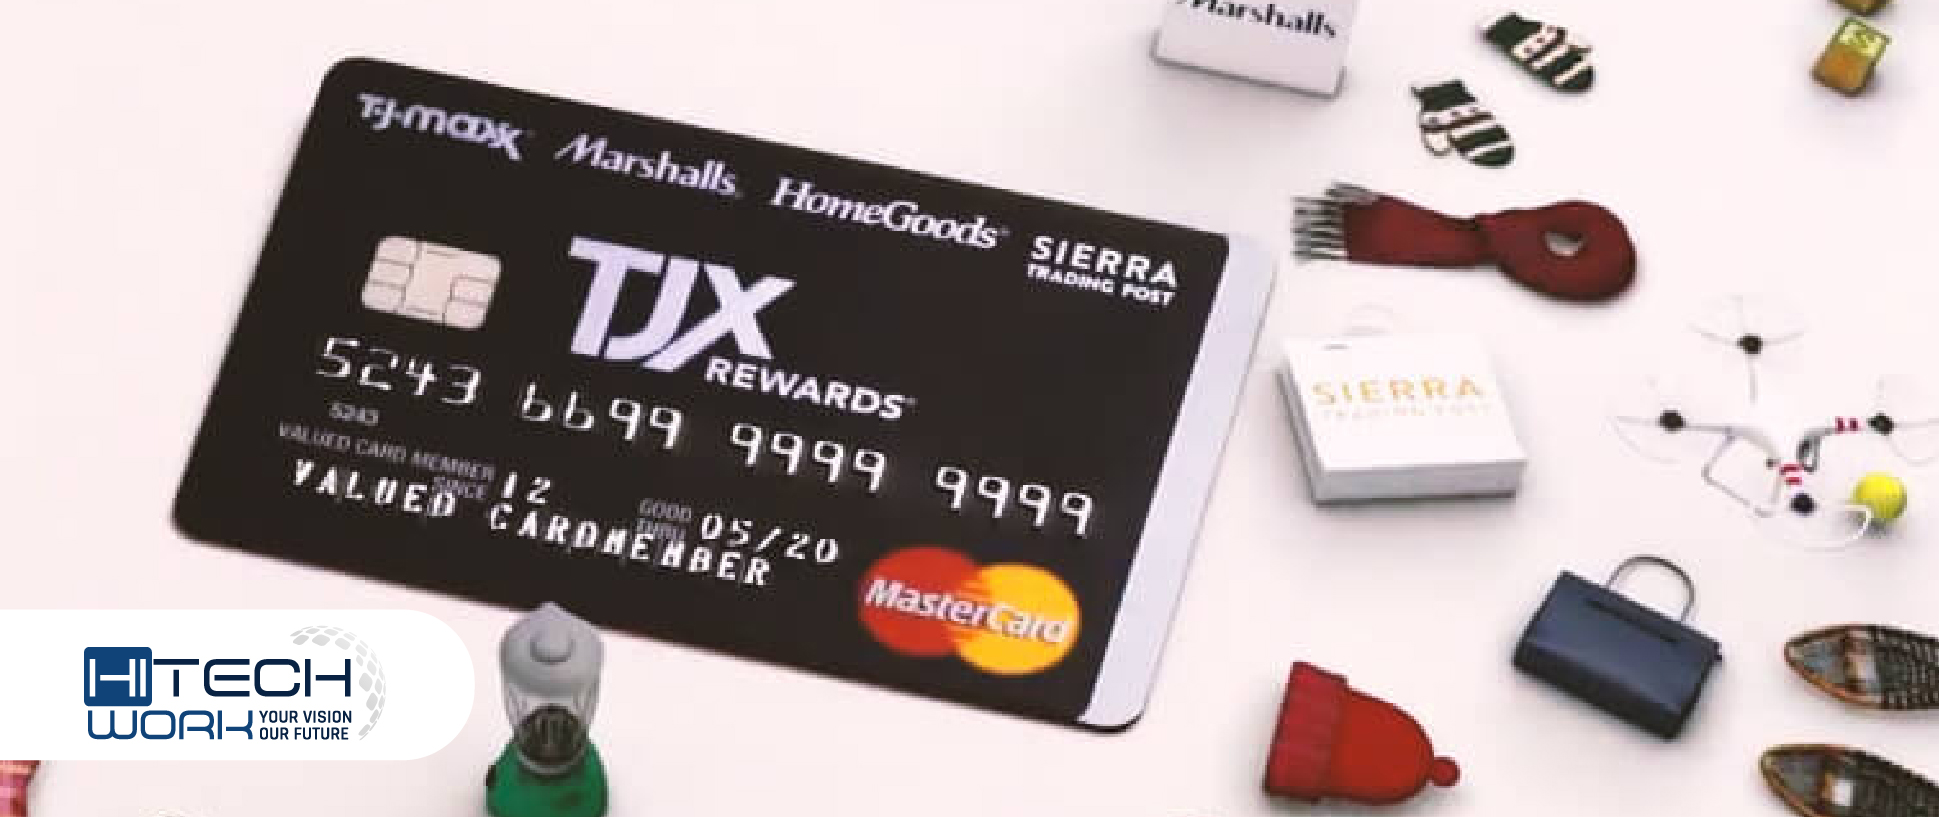 tj maxx credit card login